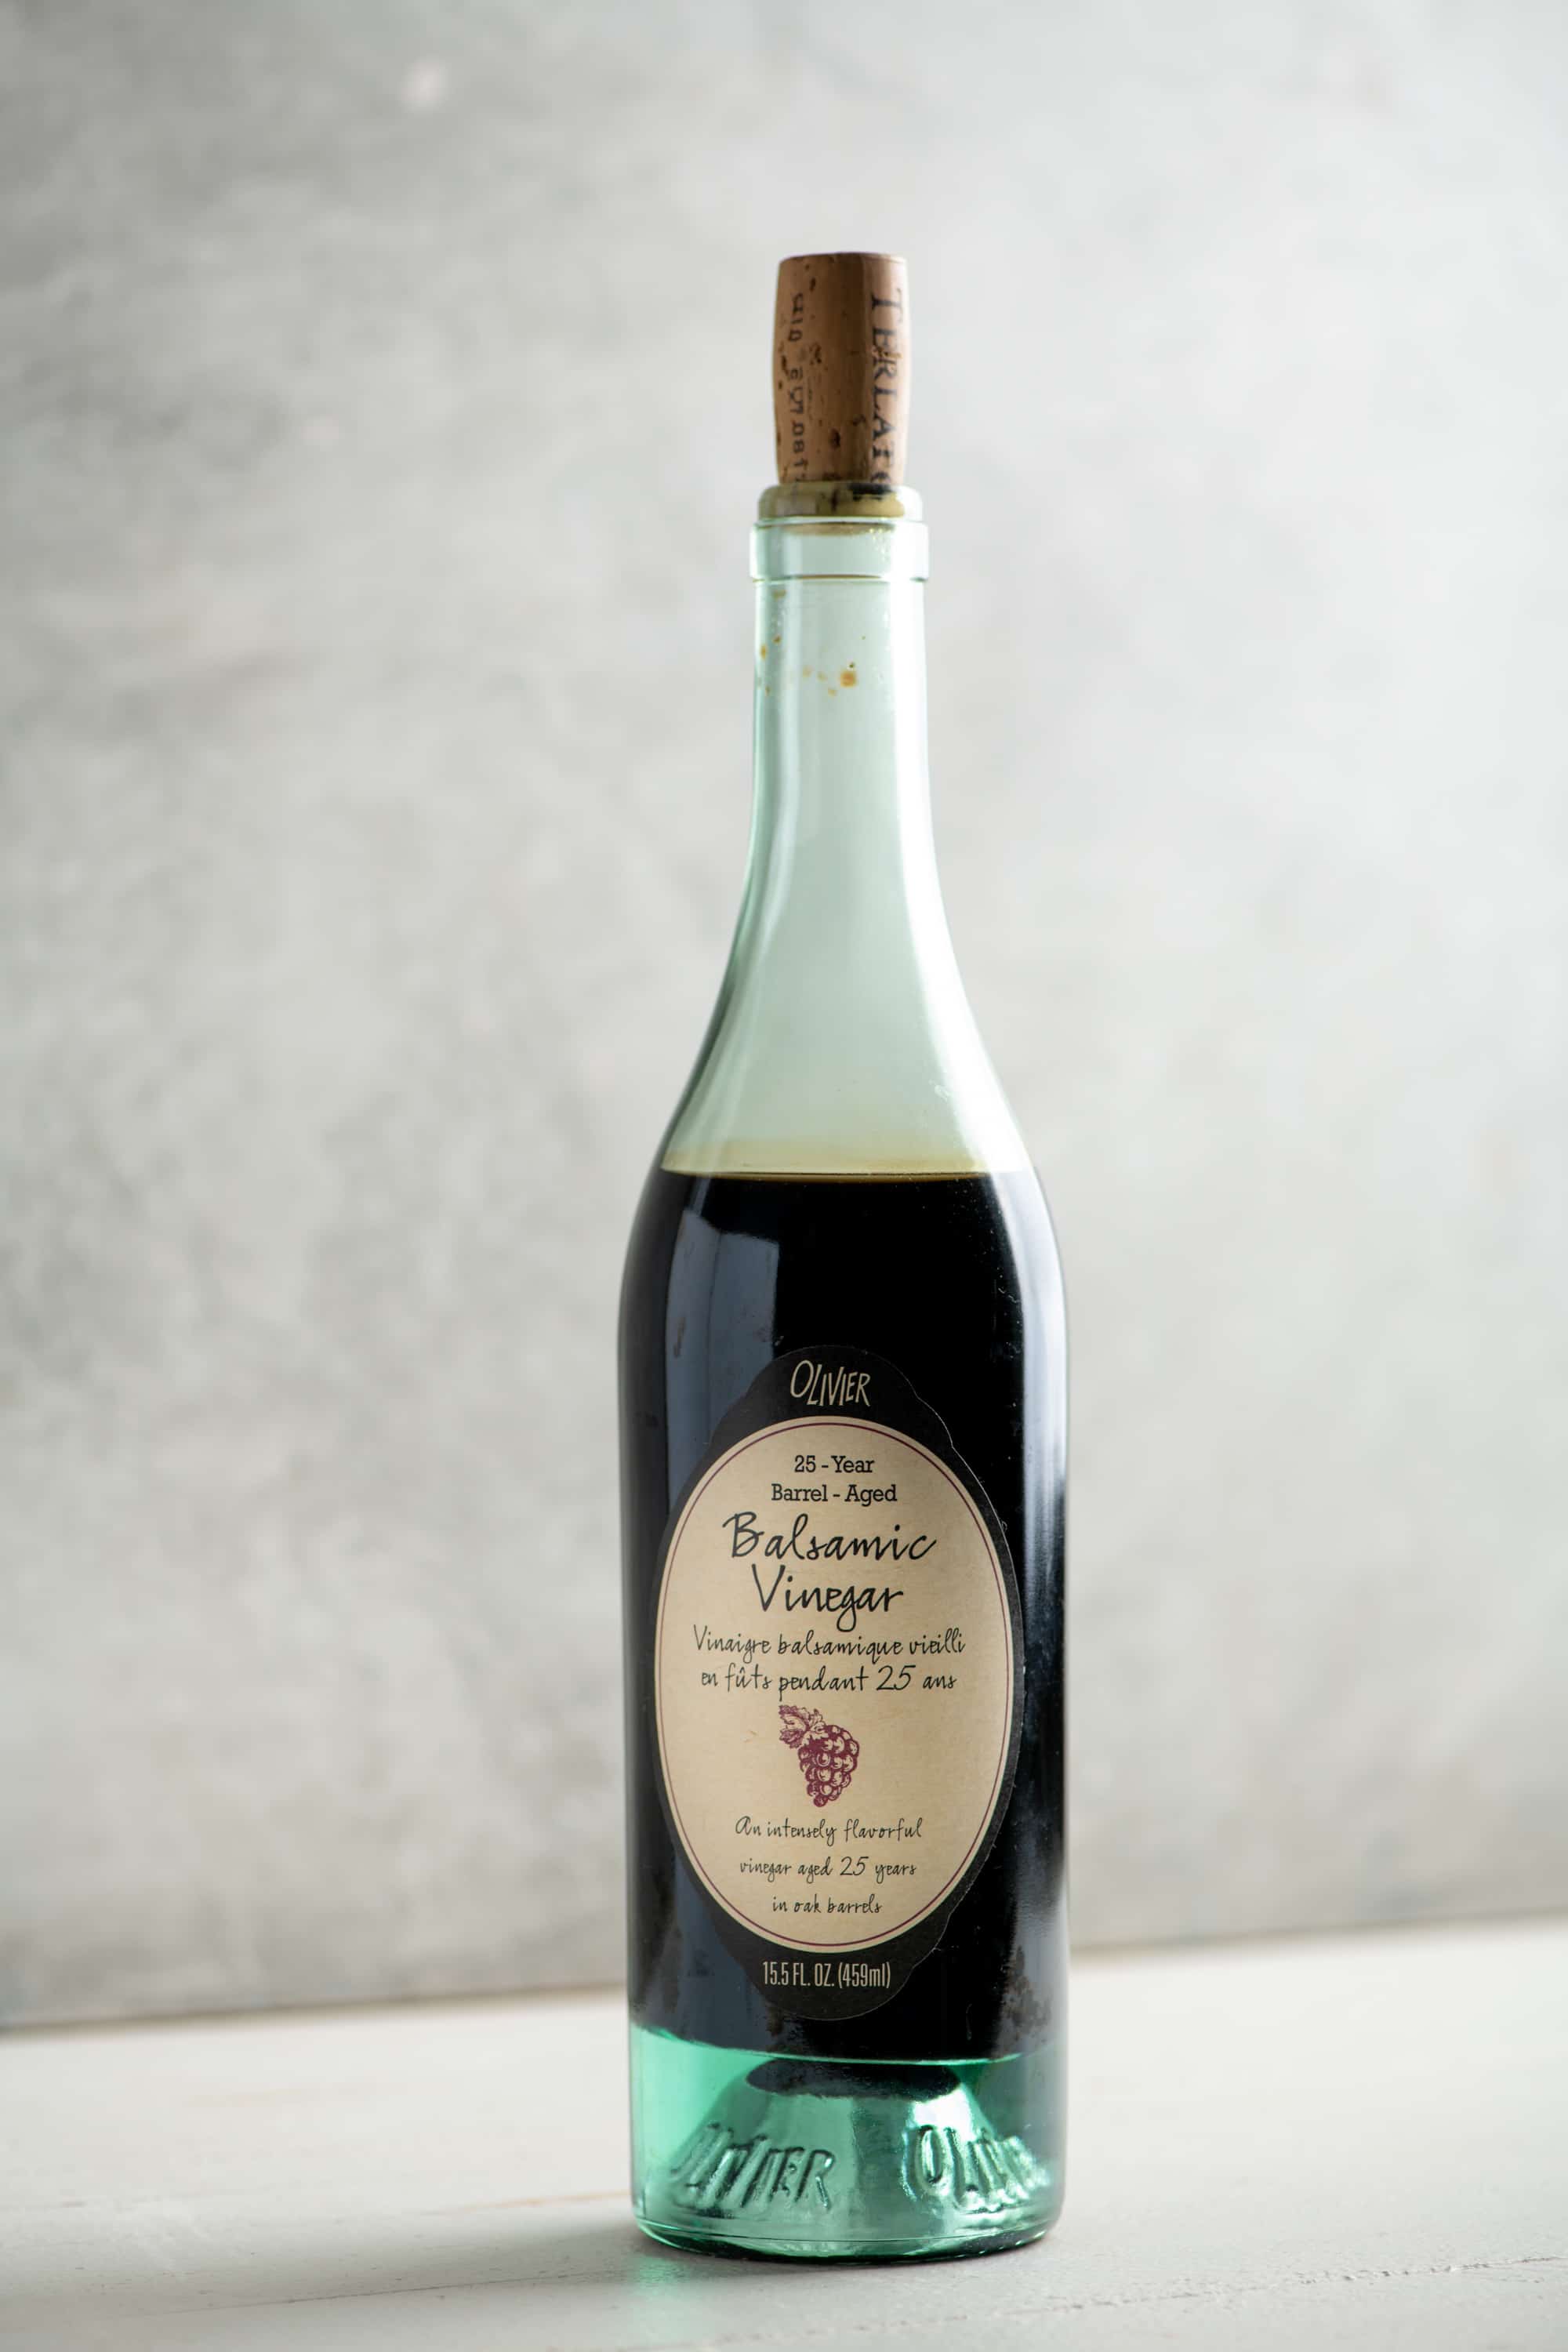 Bottle of Oliver Balsamic Vinegar.